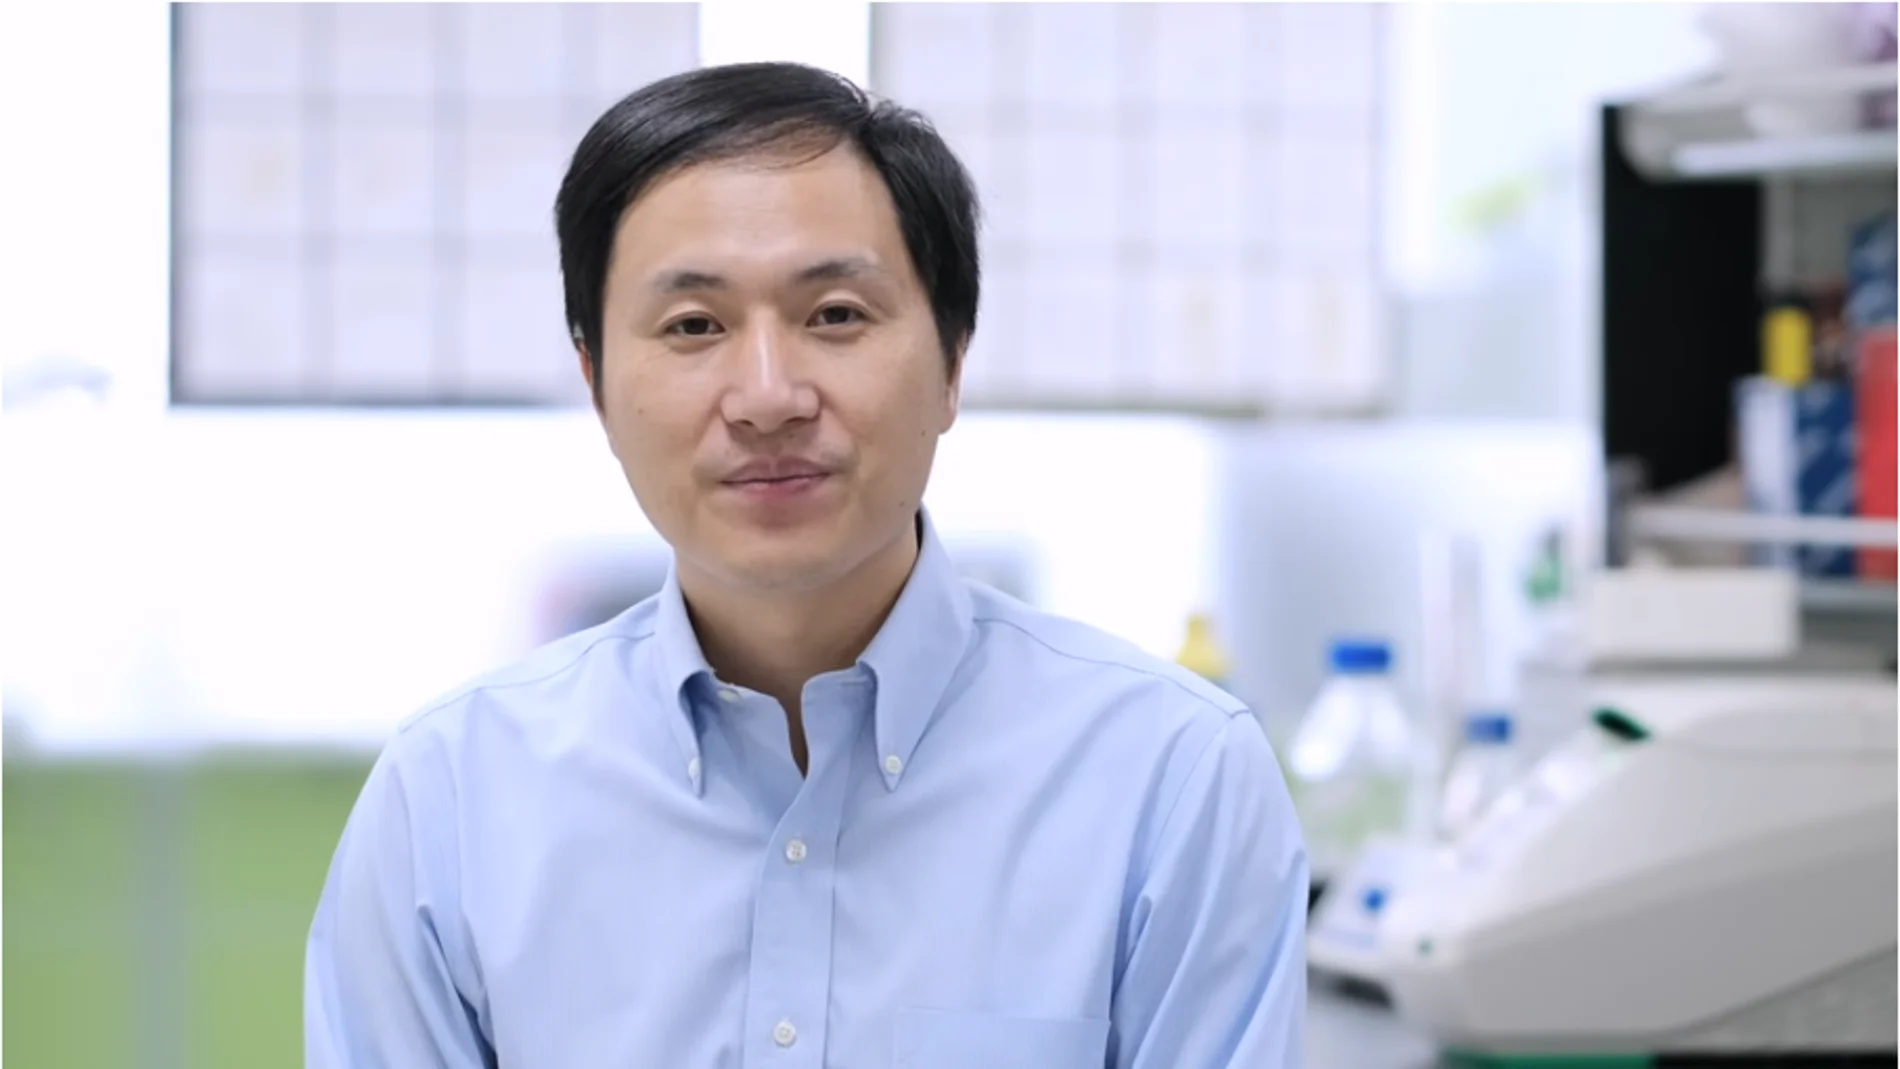 Un cientifico chino dice haber creado bebes modificados con CRISPR